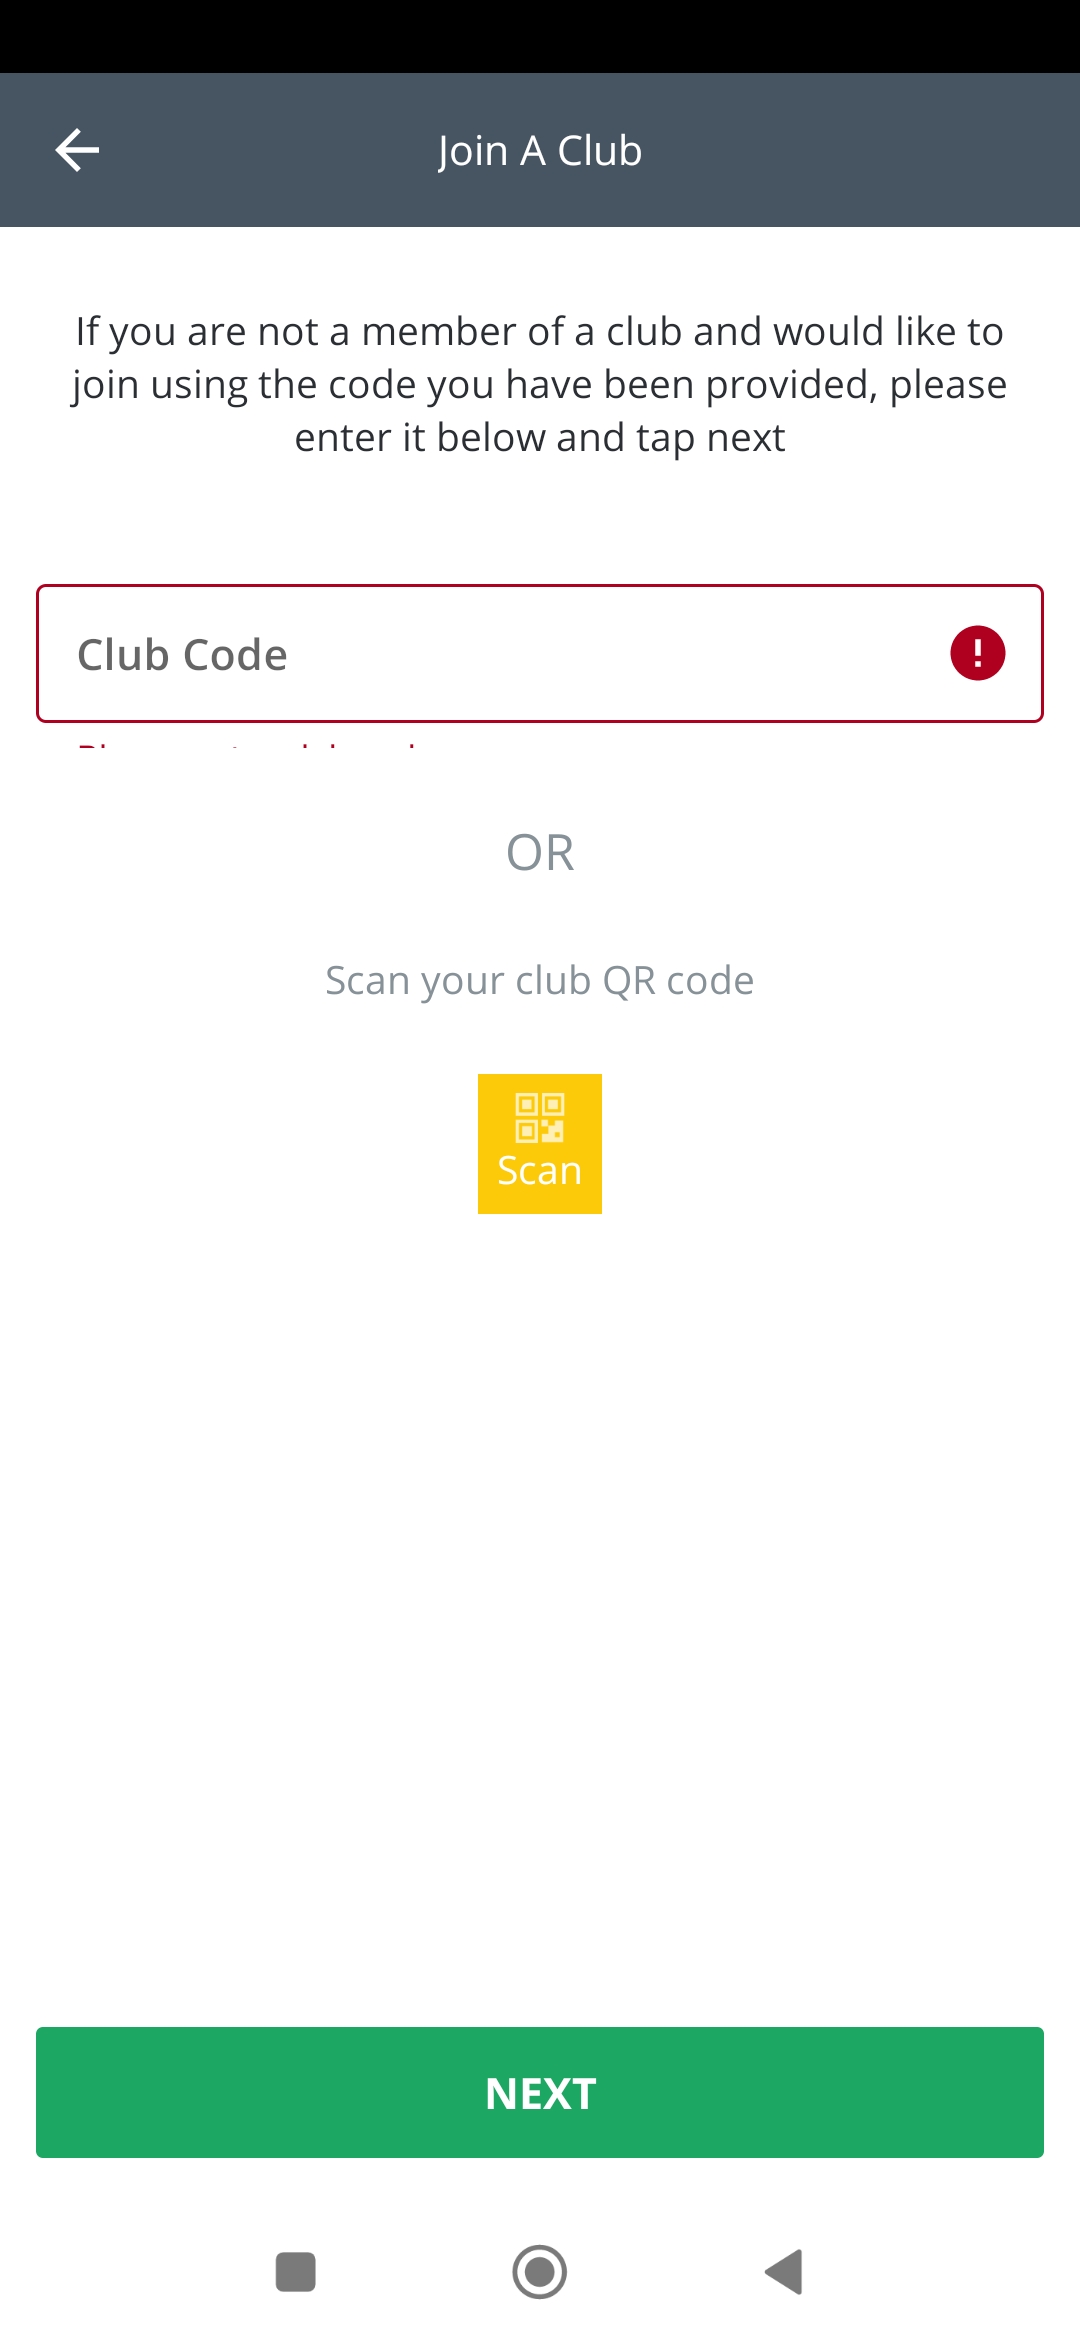 Warnung für leeres 'Club Code' Feld ist nicht sichtbar auf 'Join a Club' Seite